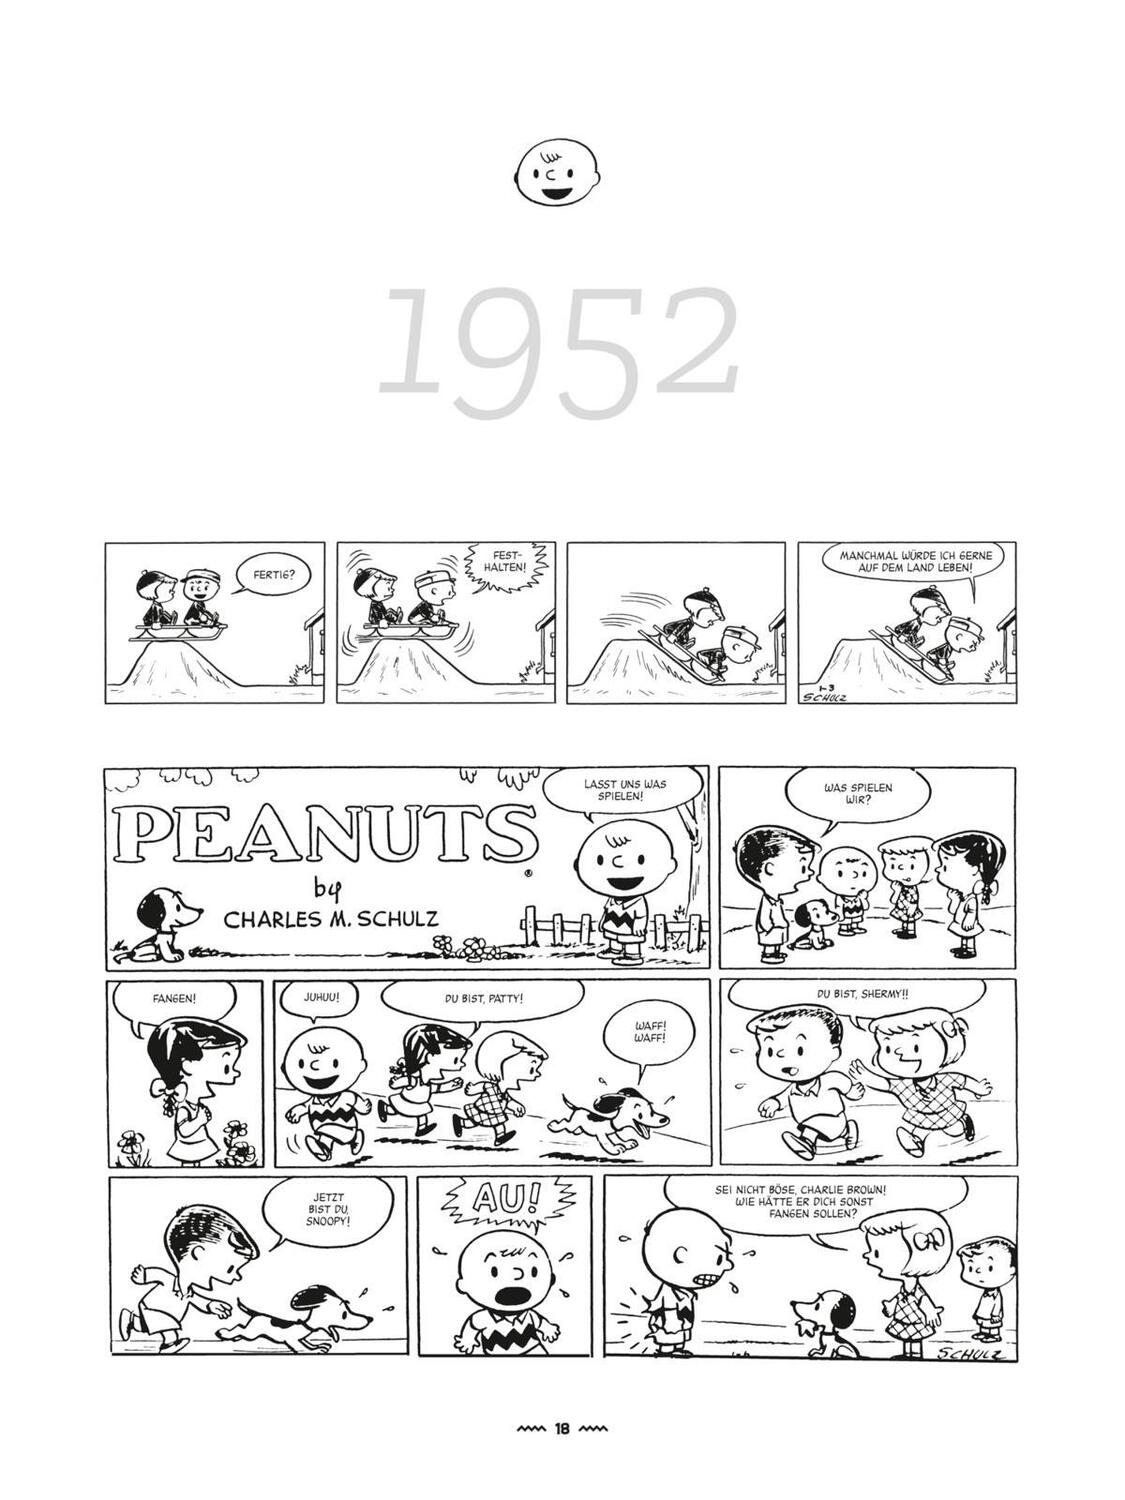 Bild: 9783551028501 | ... Und Charles M. Schulz schuf die Peanuts | Charles M. Schulz | Buch